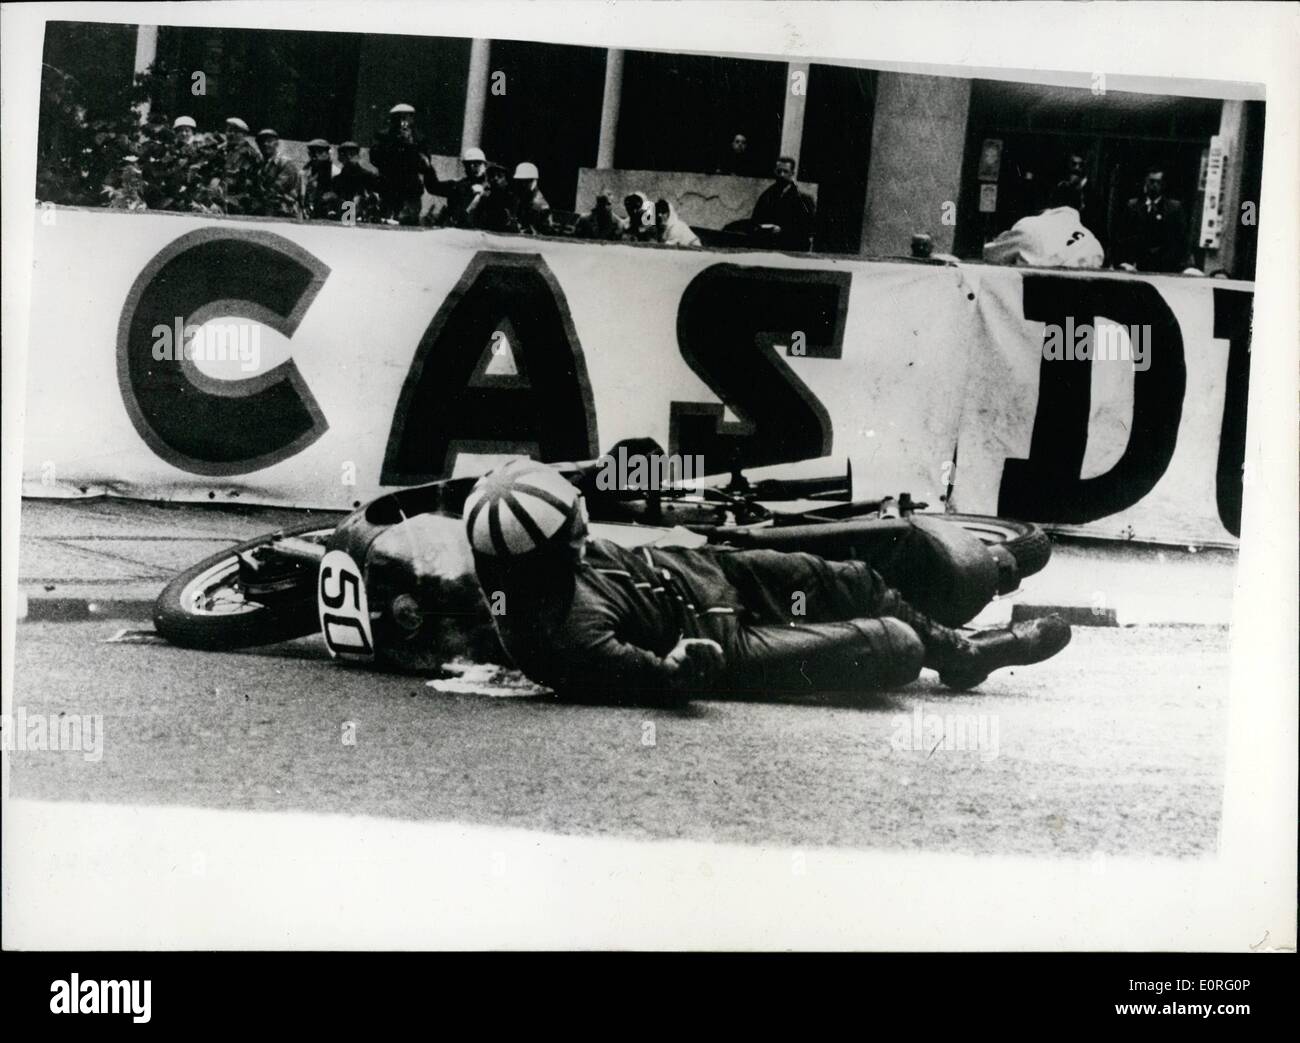 Giugno 06, 1959 - Ranson proviene una troncatrice nel T.T. evento sul isola di man. Mostra fotografica di L.B. Ranson si stacca la sua macchina al quarto ponte a Douglas, I.O.M. durante il Senior T.T. evento. La gara è stata vinta da John Surtees a una media di 87.95 m.p.h. Foto Stock